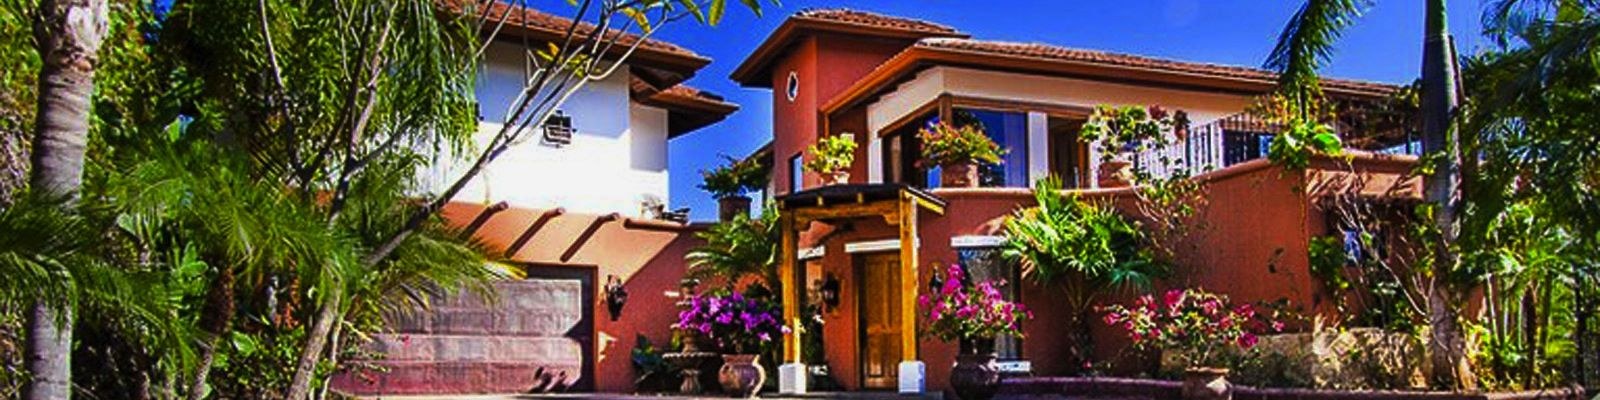 Mafi Real Estate Homes & Villas